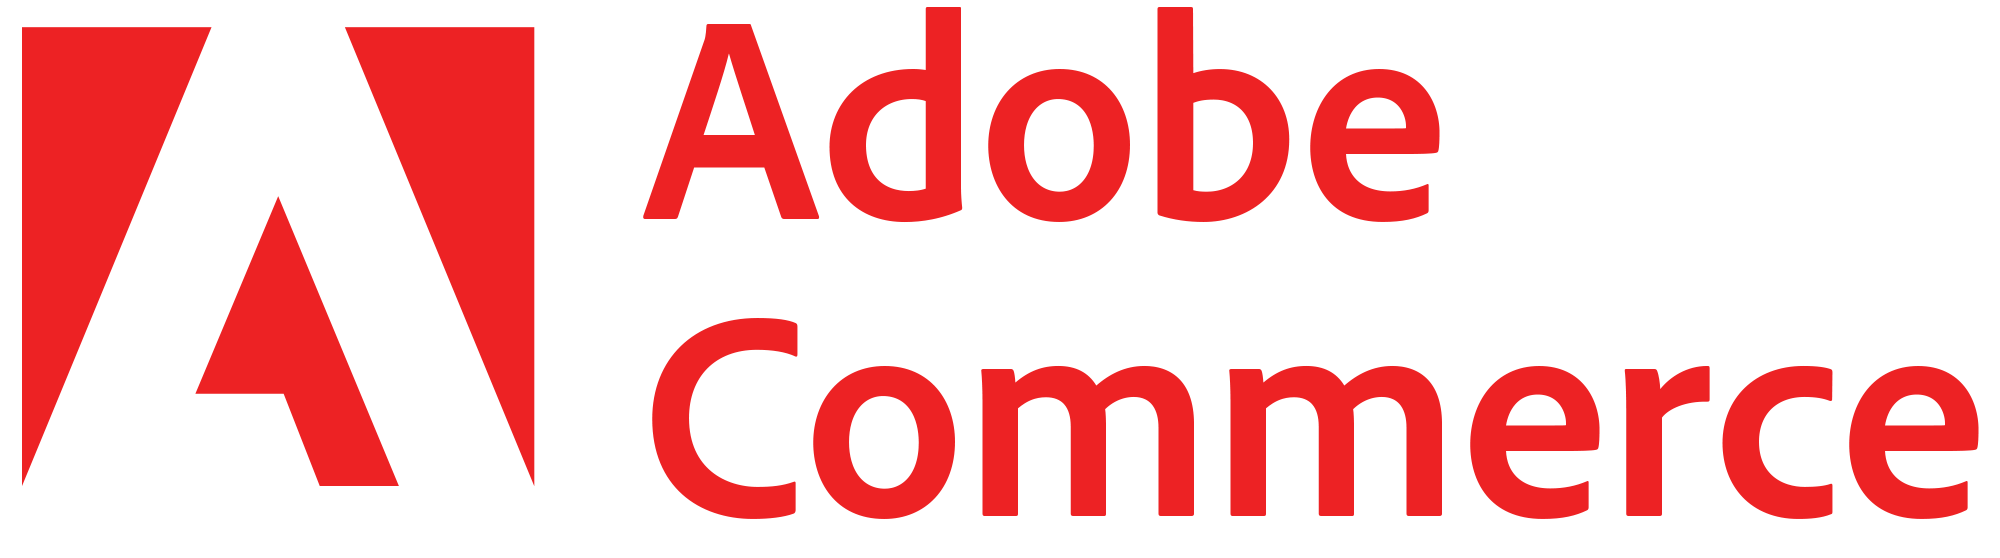 AdobeCommerce1